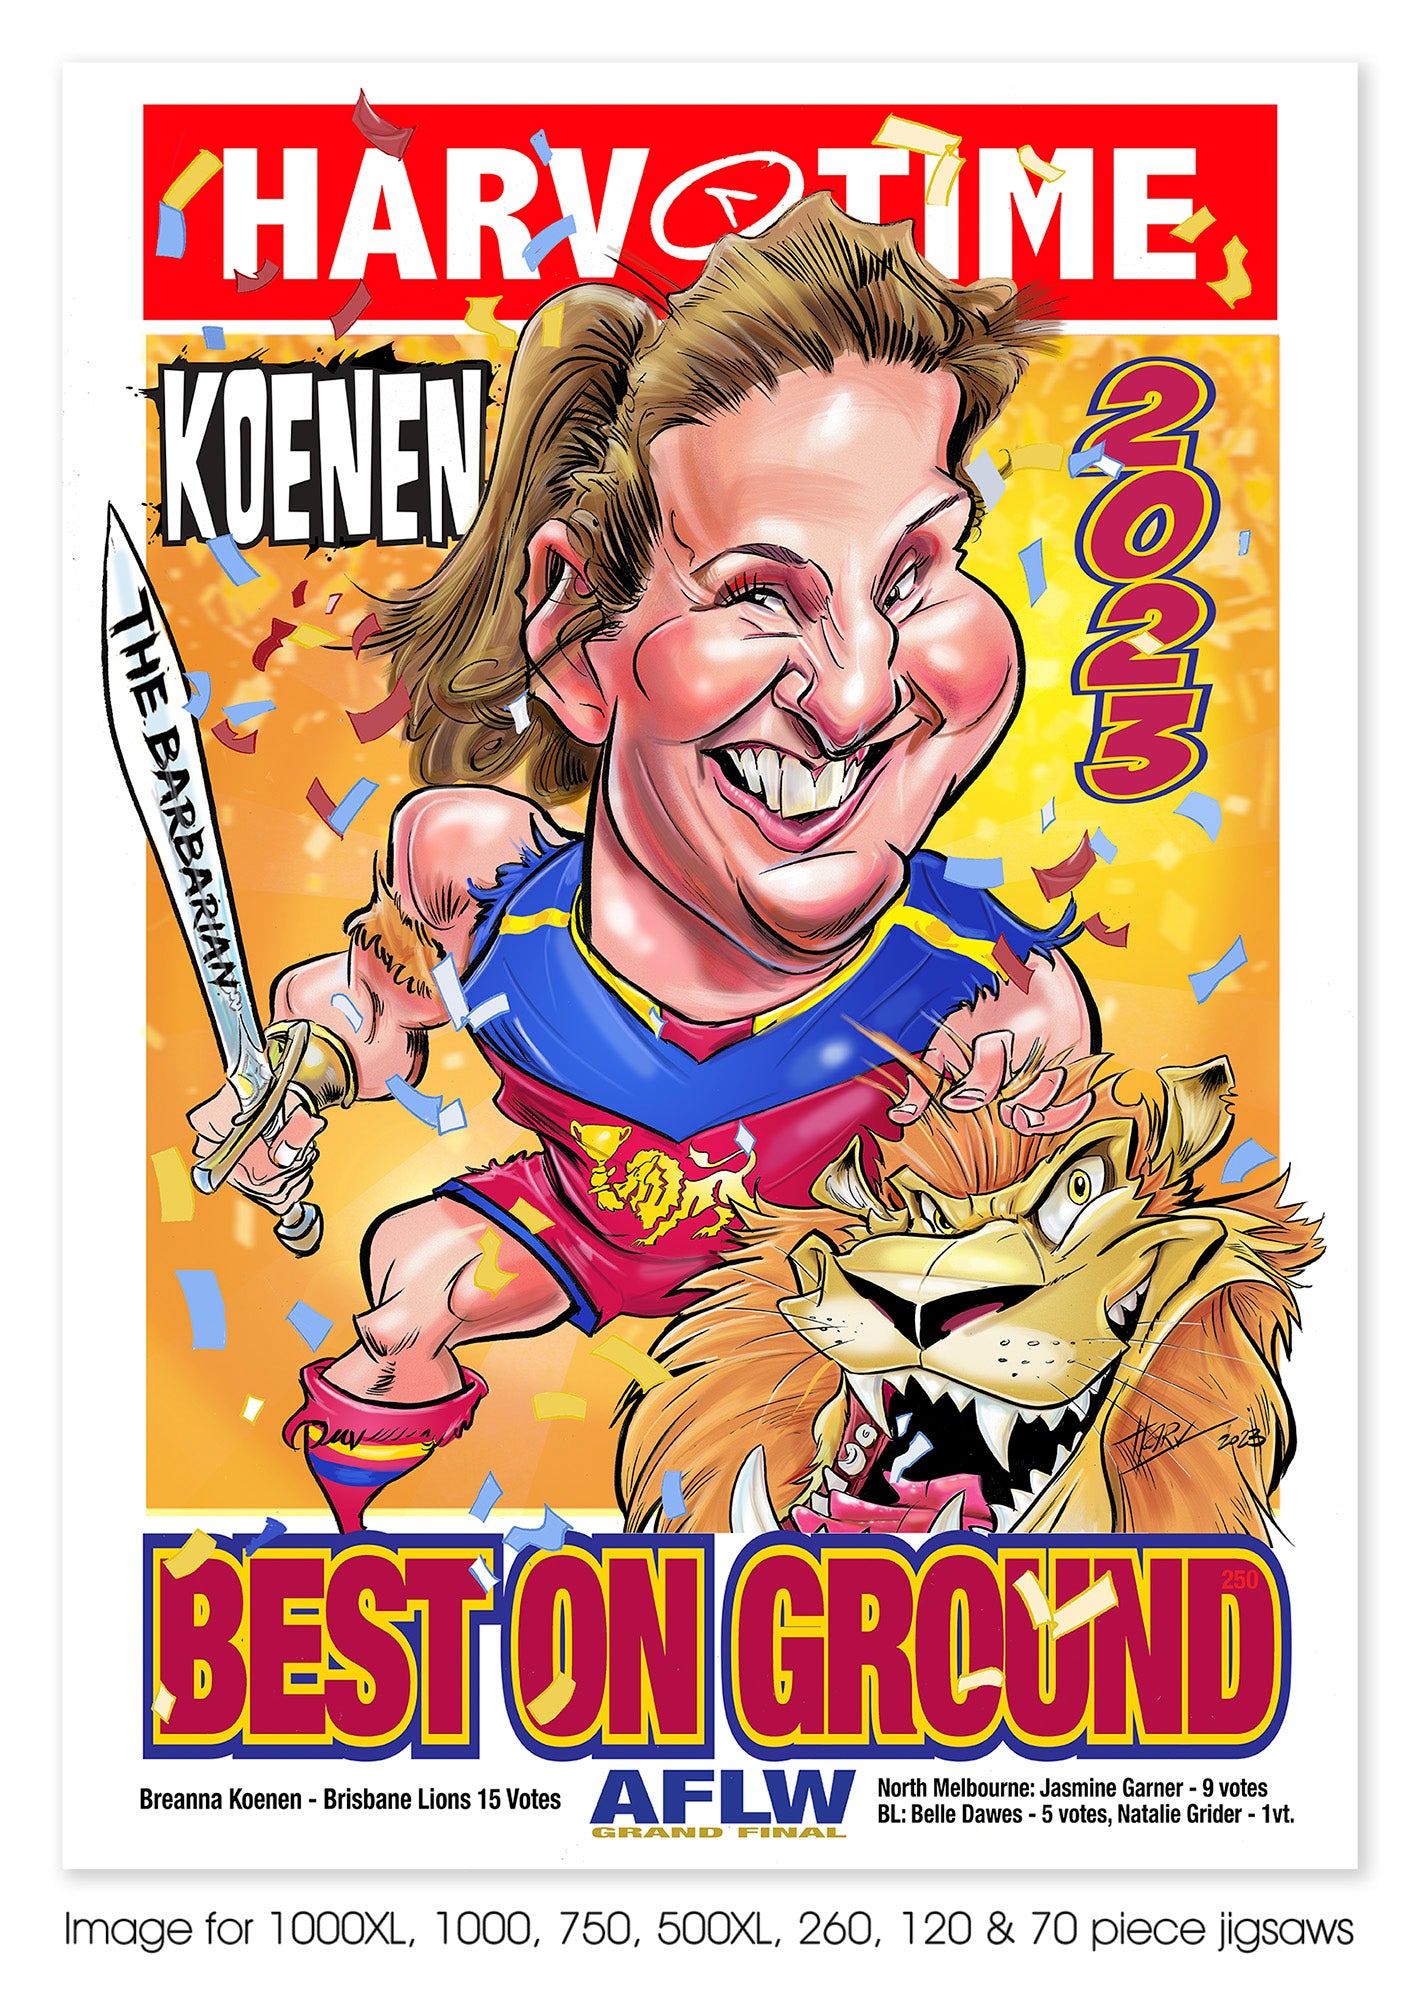 Breanna Koenen - Brisbane Lions Best on Ground